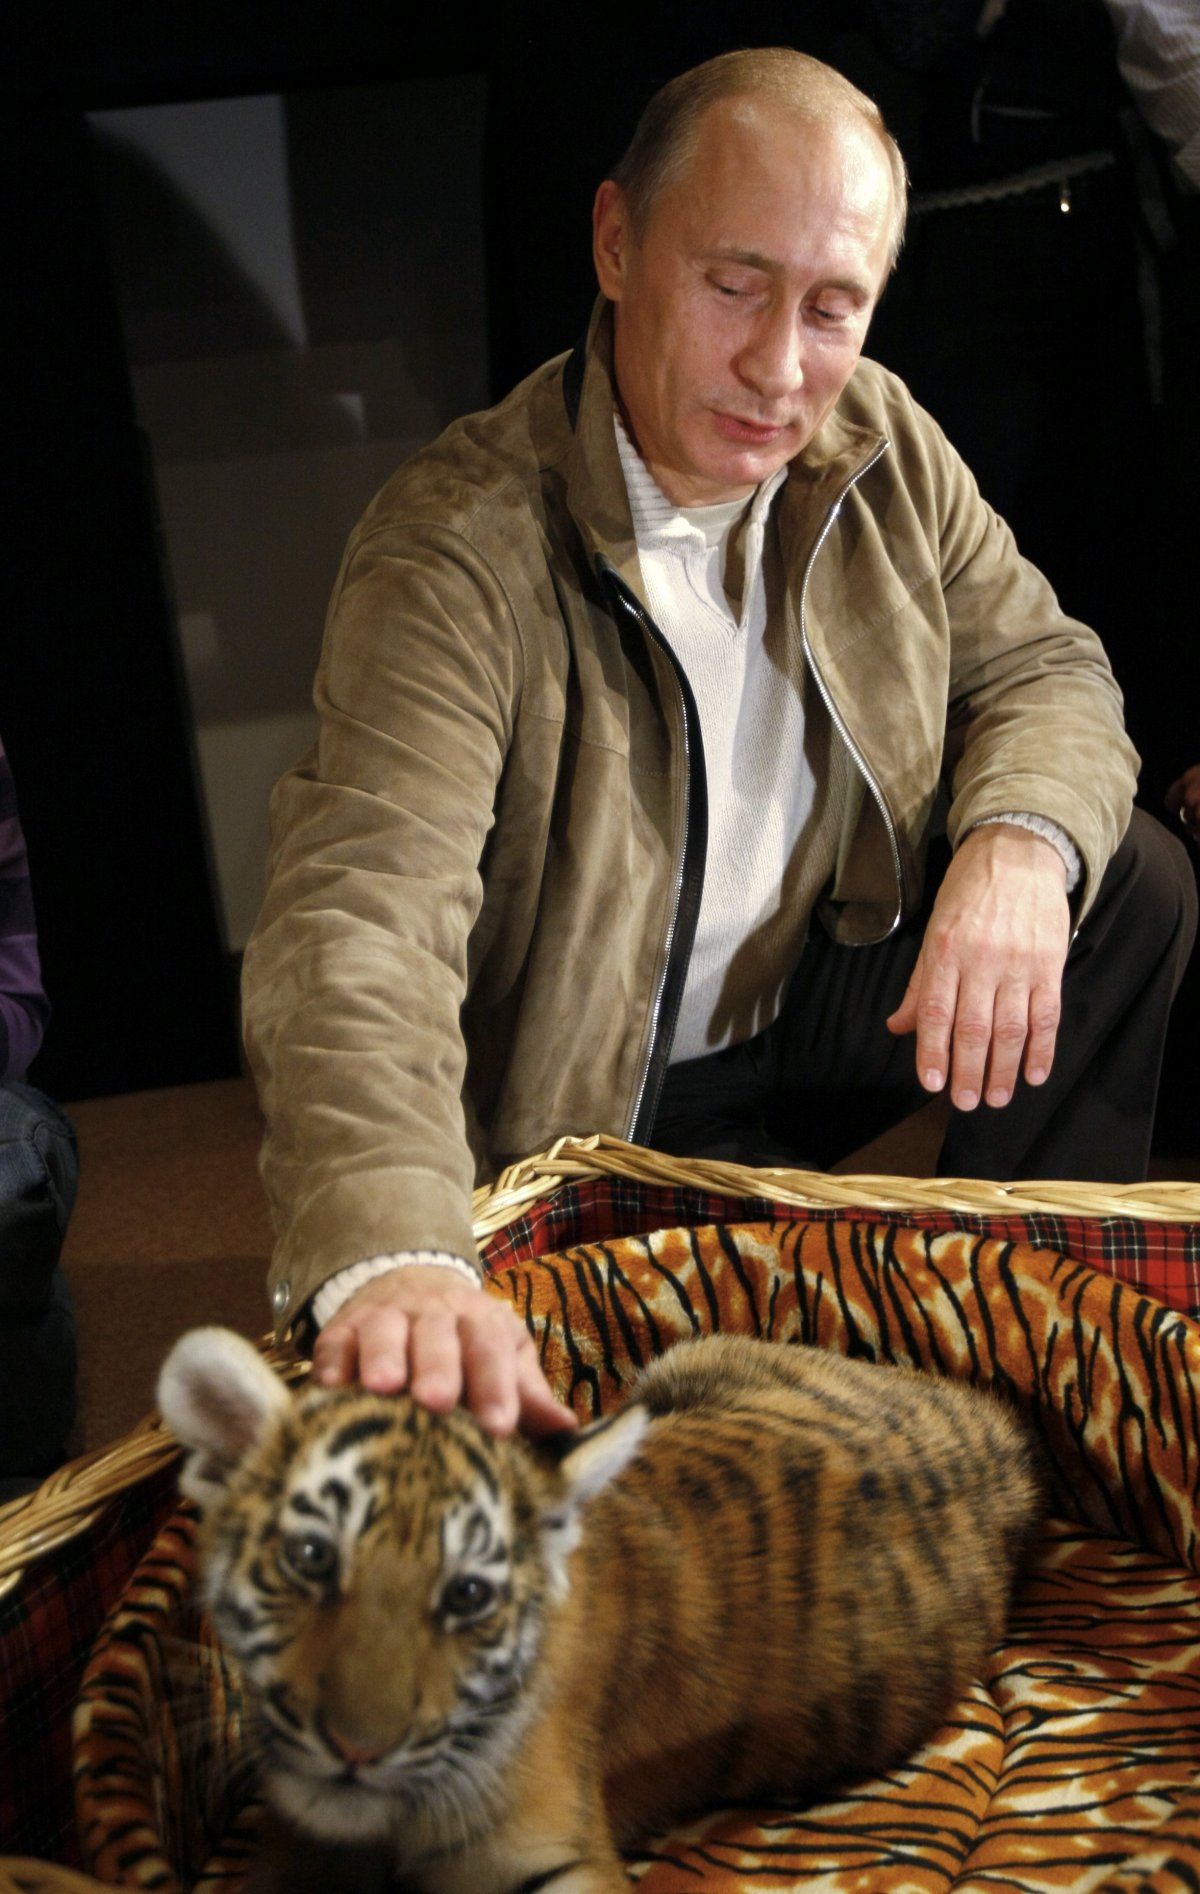 MA-Putin-tiger.jpg